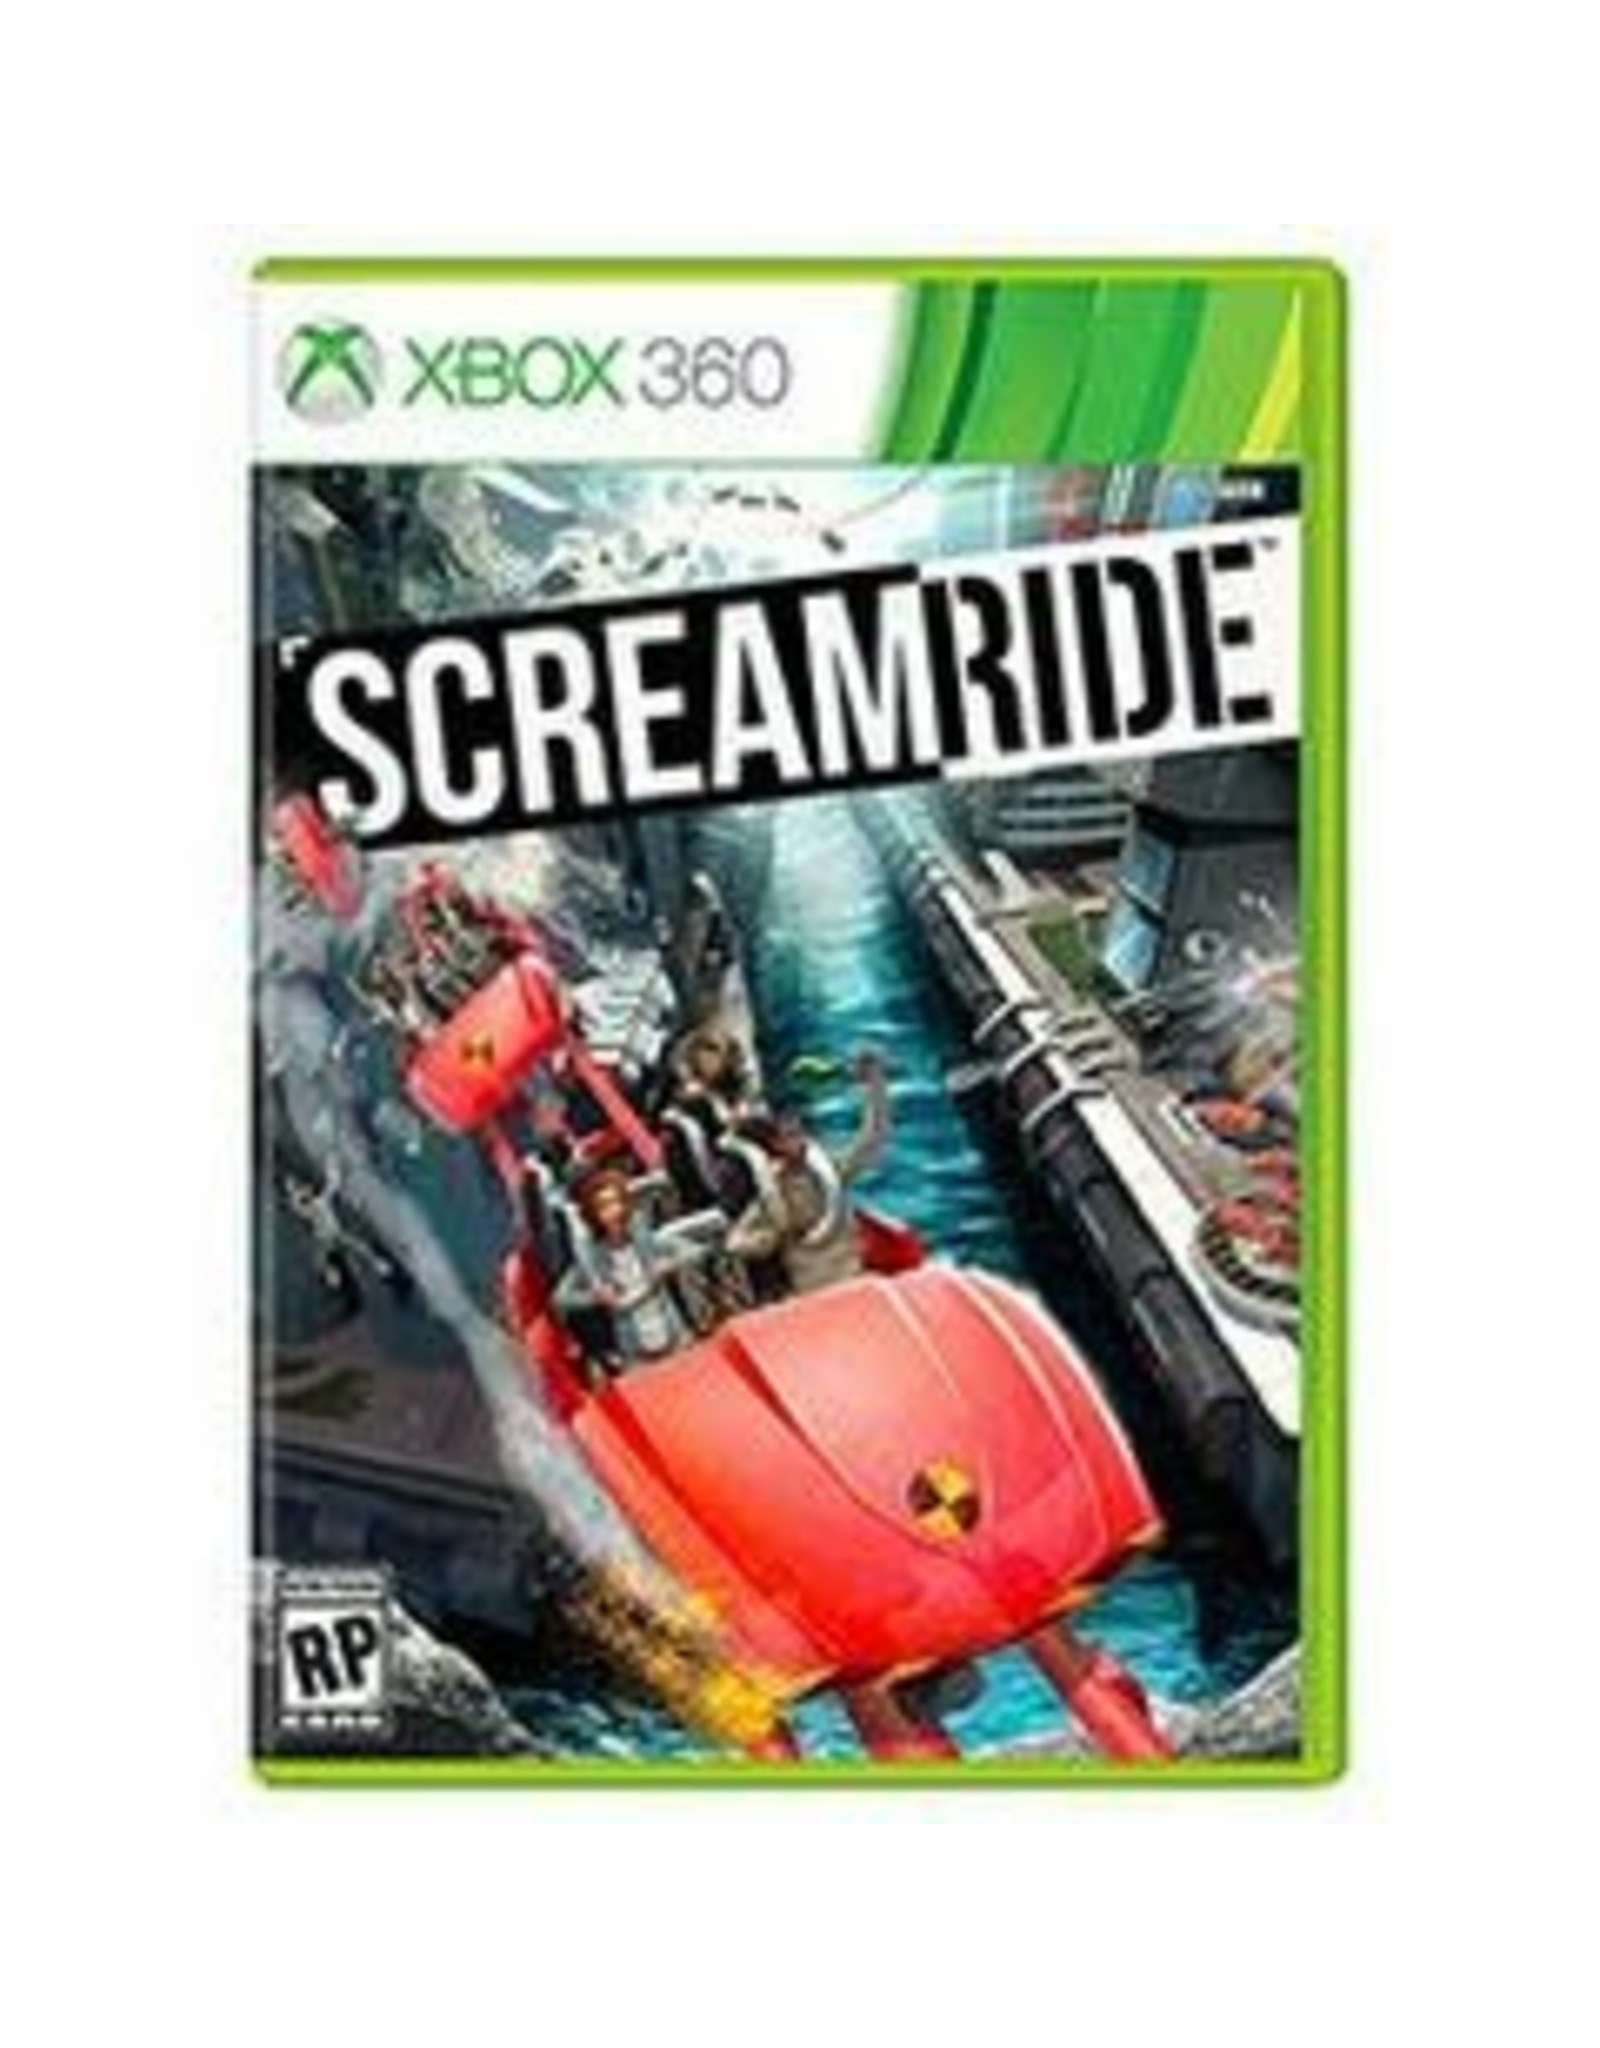 Xbox 360 ScreamRide (CiB)